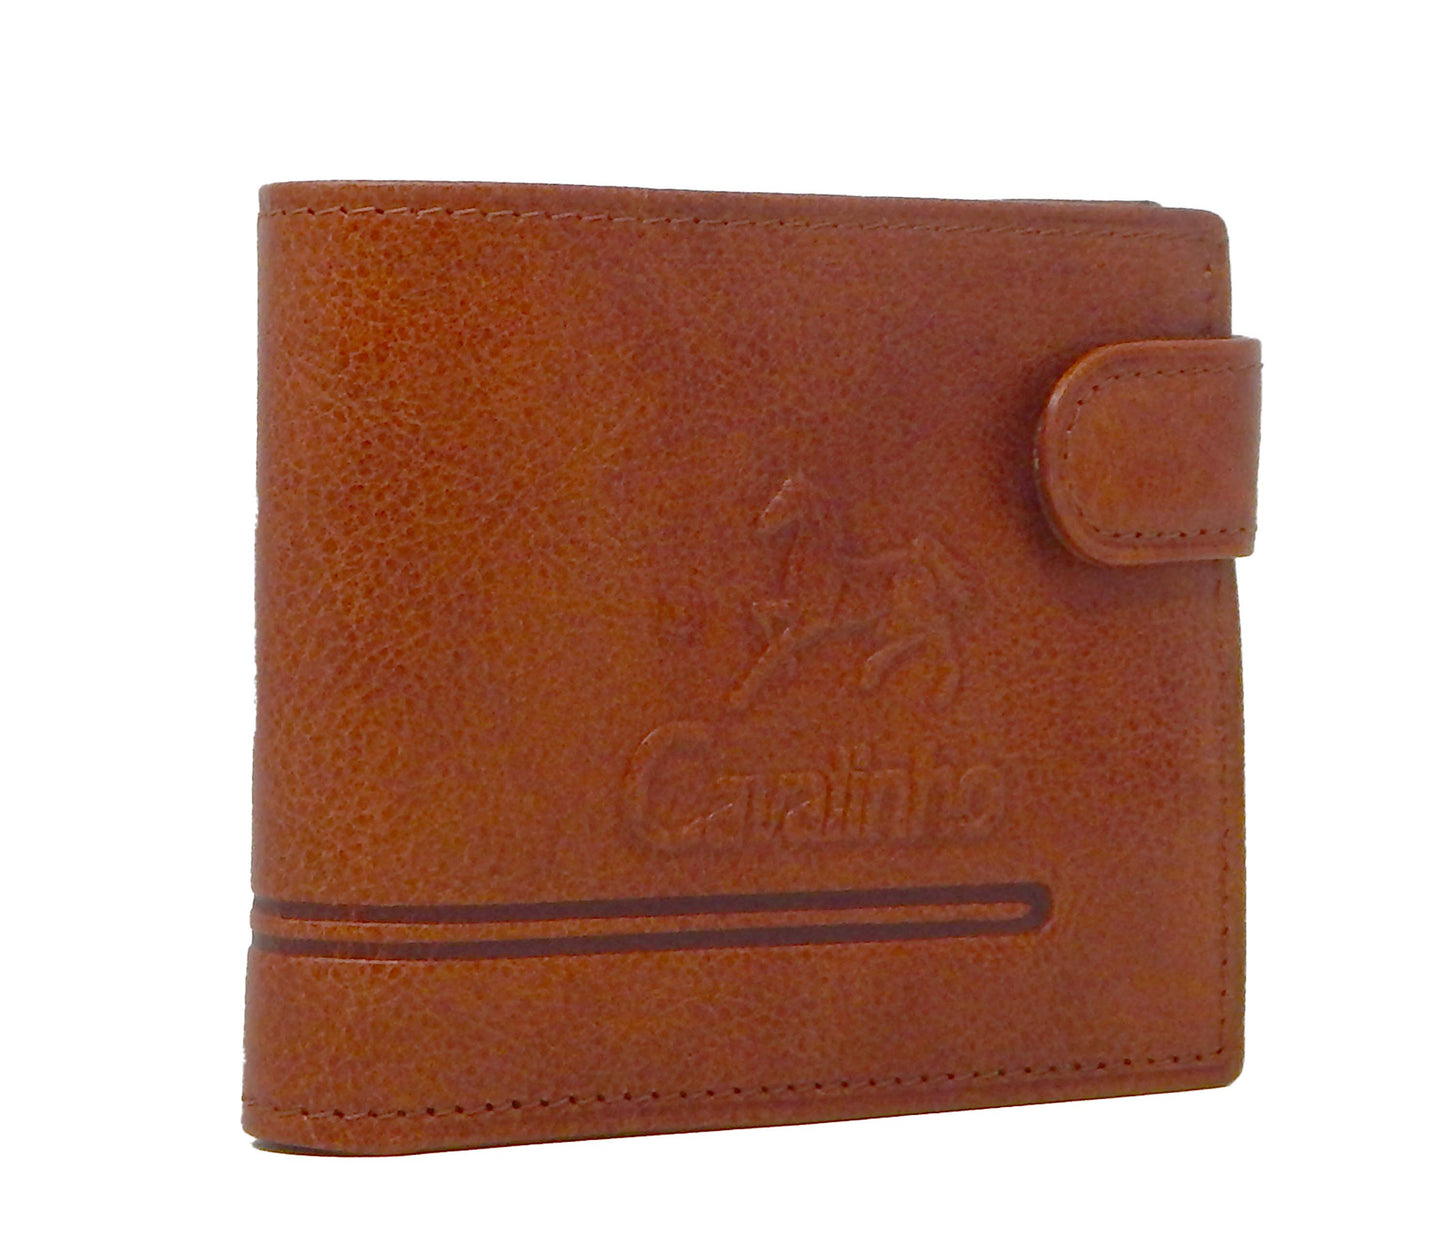 Cavalinho Men's Bifold Leather Wallet - SaddleBrown - 28610588.13.99_2